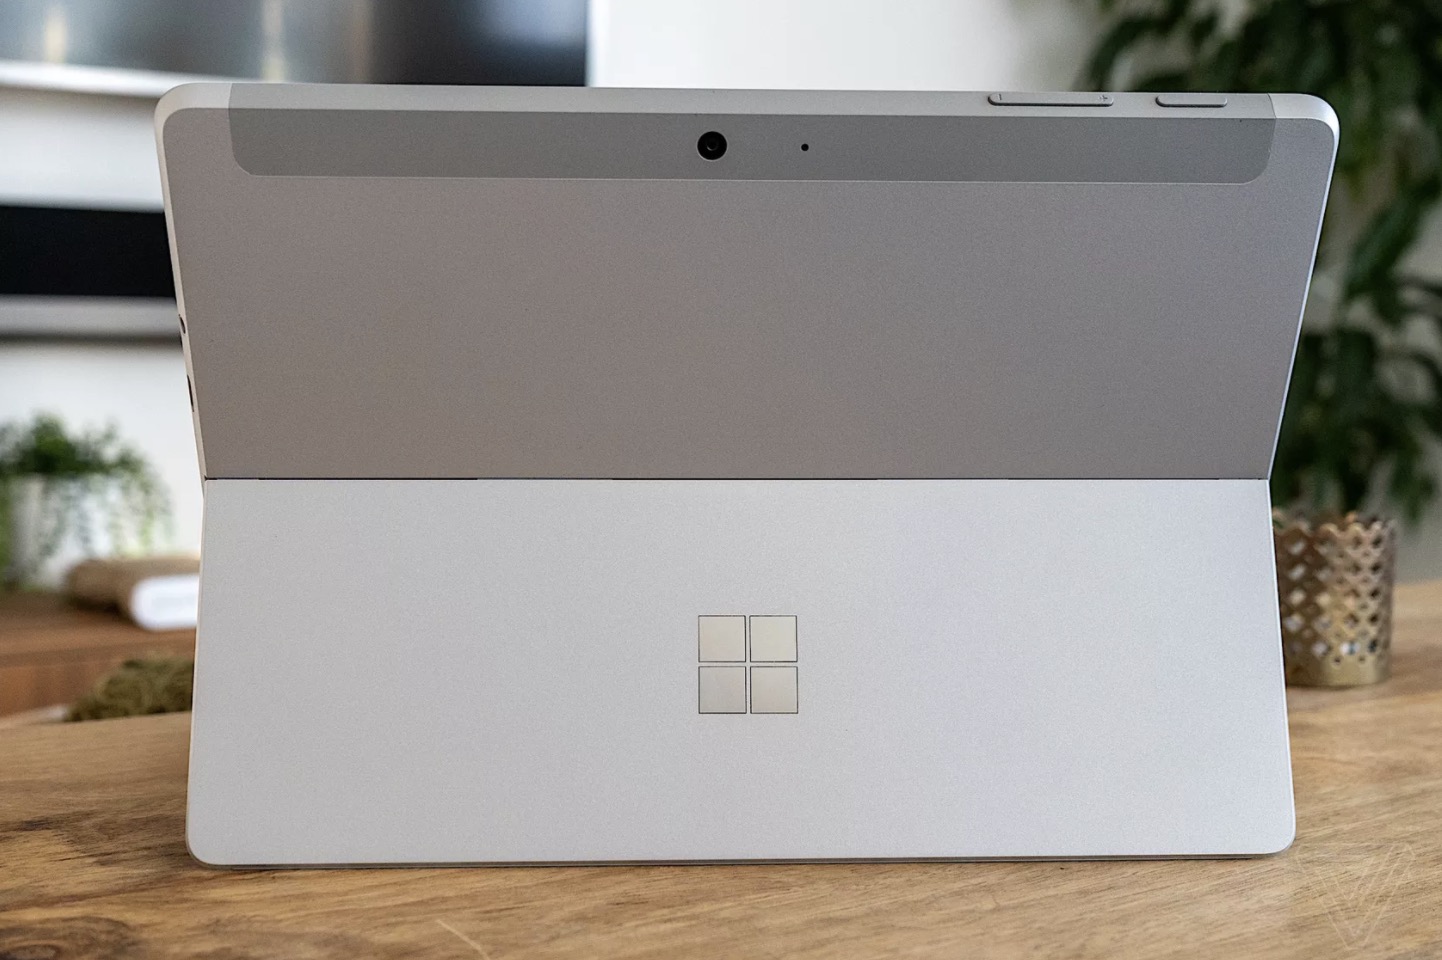 Microsoft Surface Go
2 ra mắt: Màn hình 10.5 inch, cấu hình nâng cấp, giá từ 399
USD